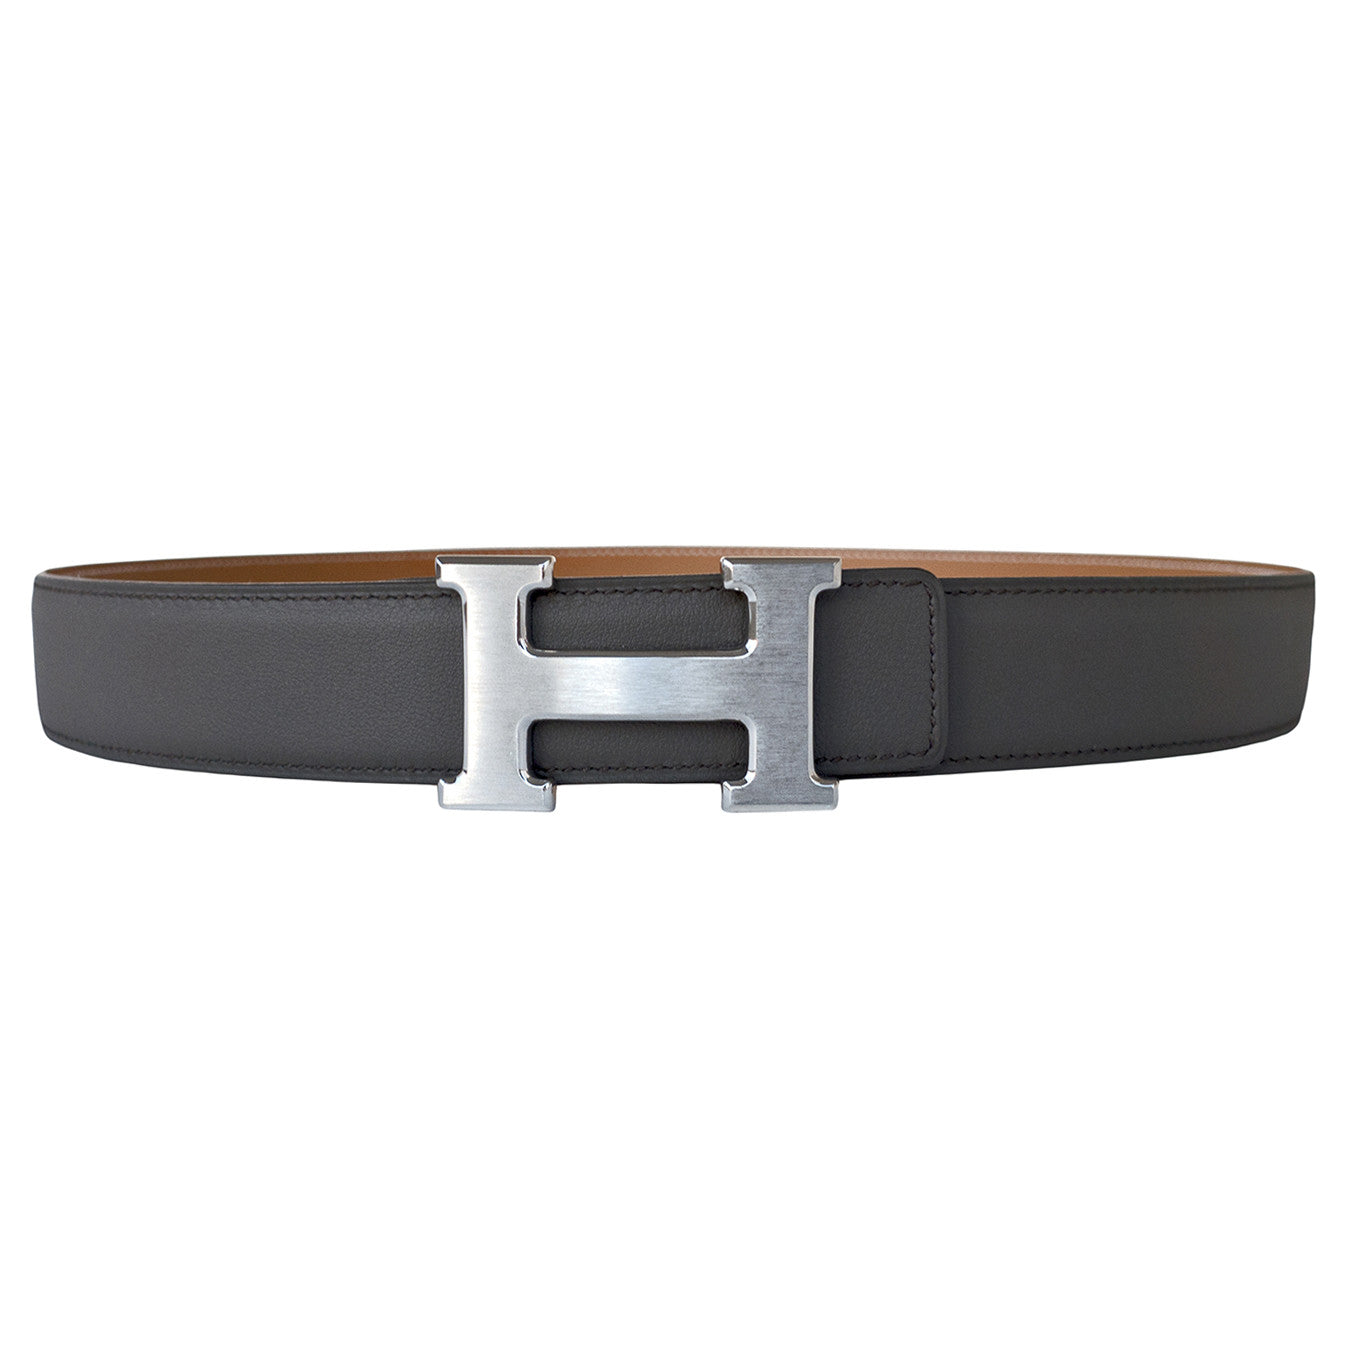 Hermes Reversible Strap Belt